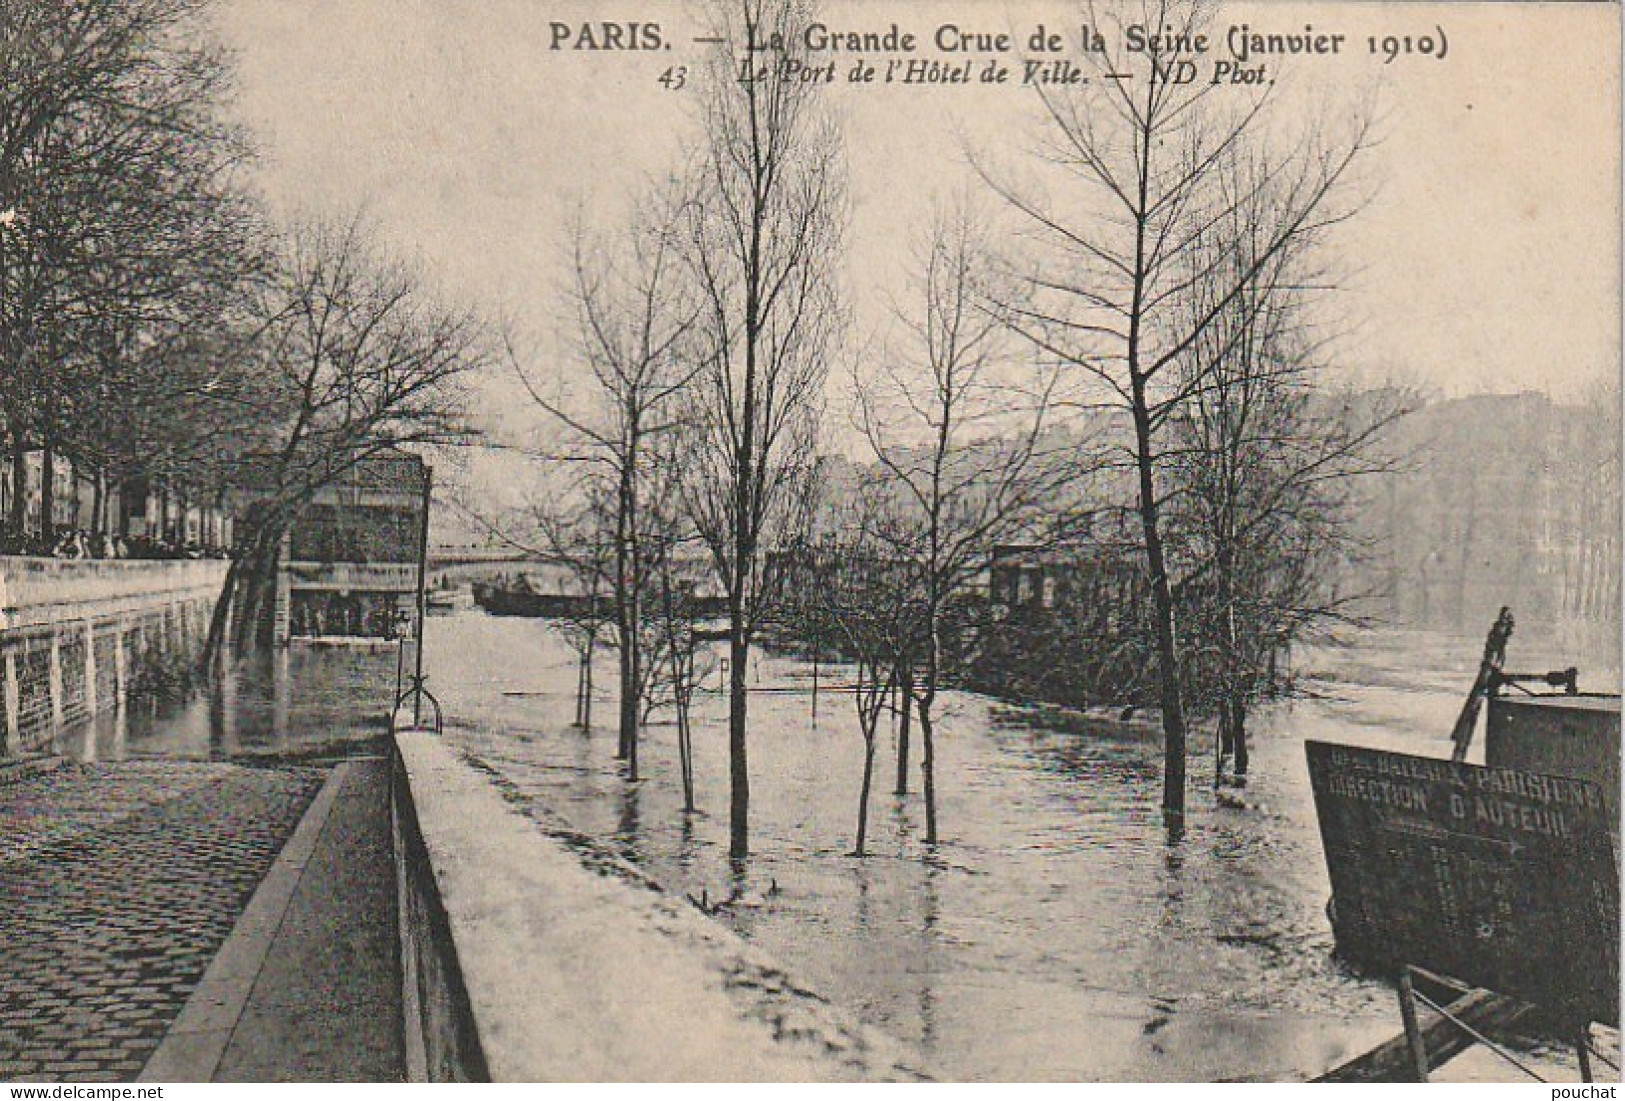 IN 28-(75) PARIS - CRUE DE LA SEINE - LE PORT DE L'HOTEL DE VILLE  - 2 SCANS - Paris Flood, 1910